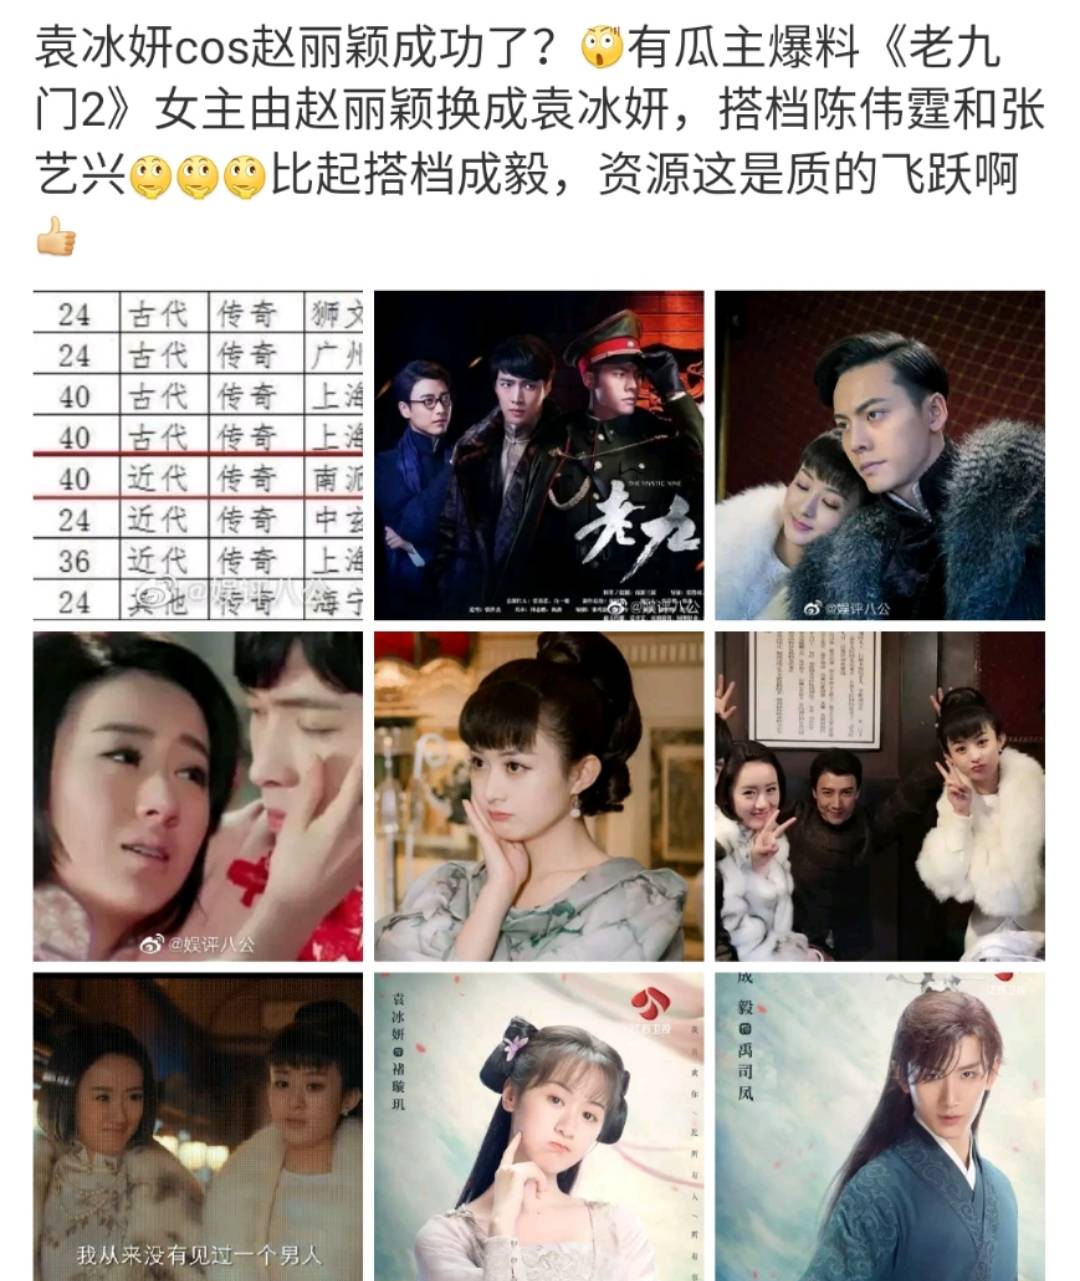 袁冰妍在第一部中饰演二月红的妻子丫头,但是因为病重早早下线了